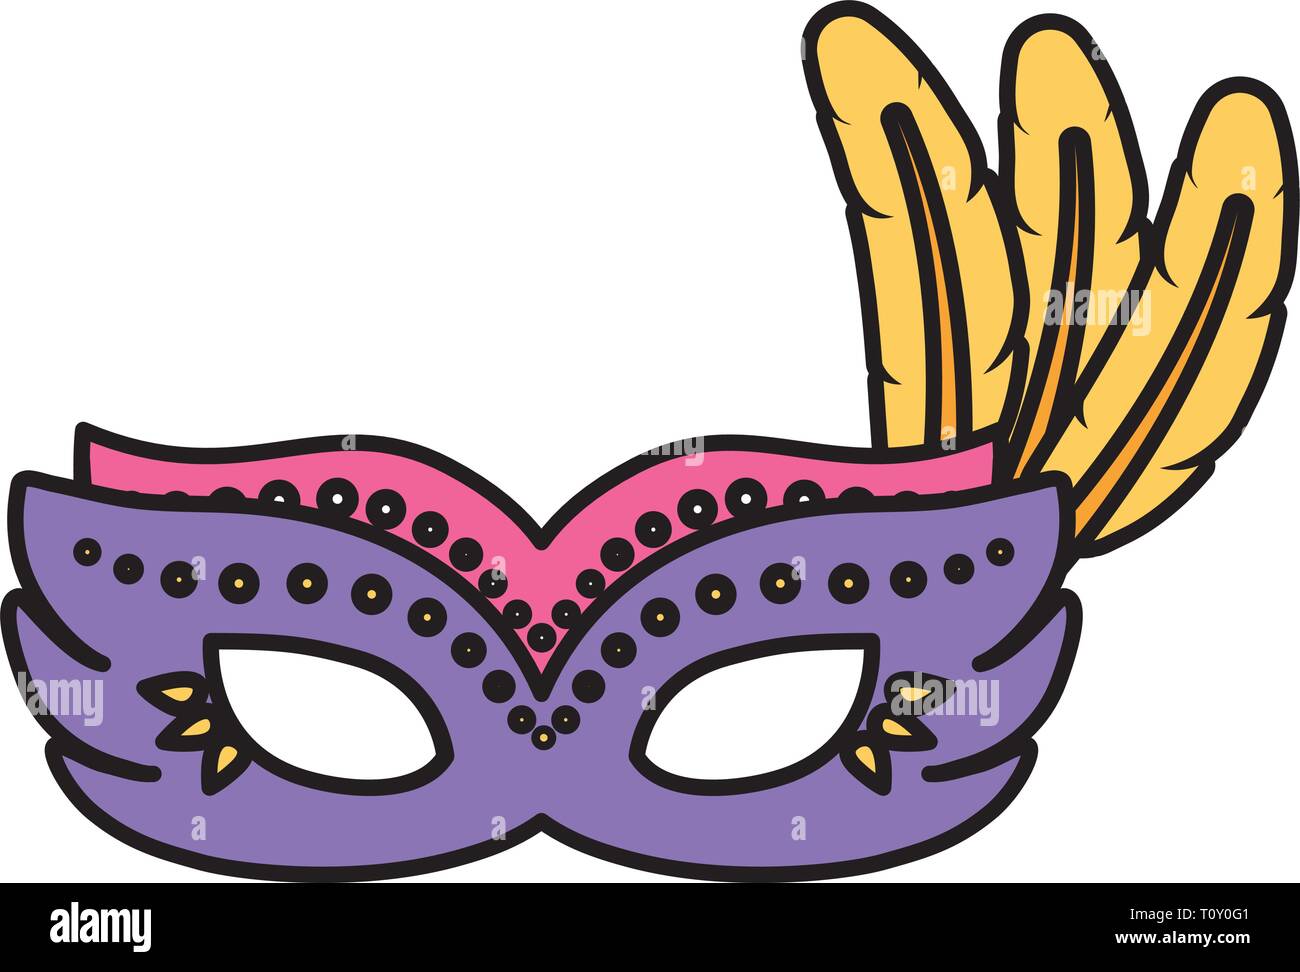 Maschera di carnevale con decorazionibellissima con disegno per carnevale  brasile buon carnevale brasile sud america carnevale ai